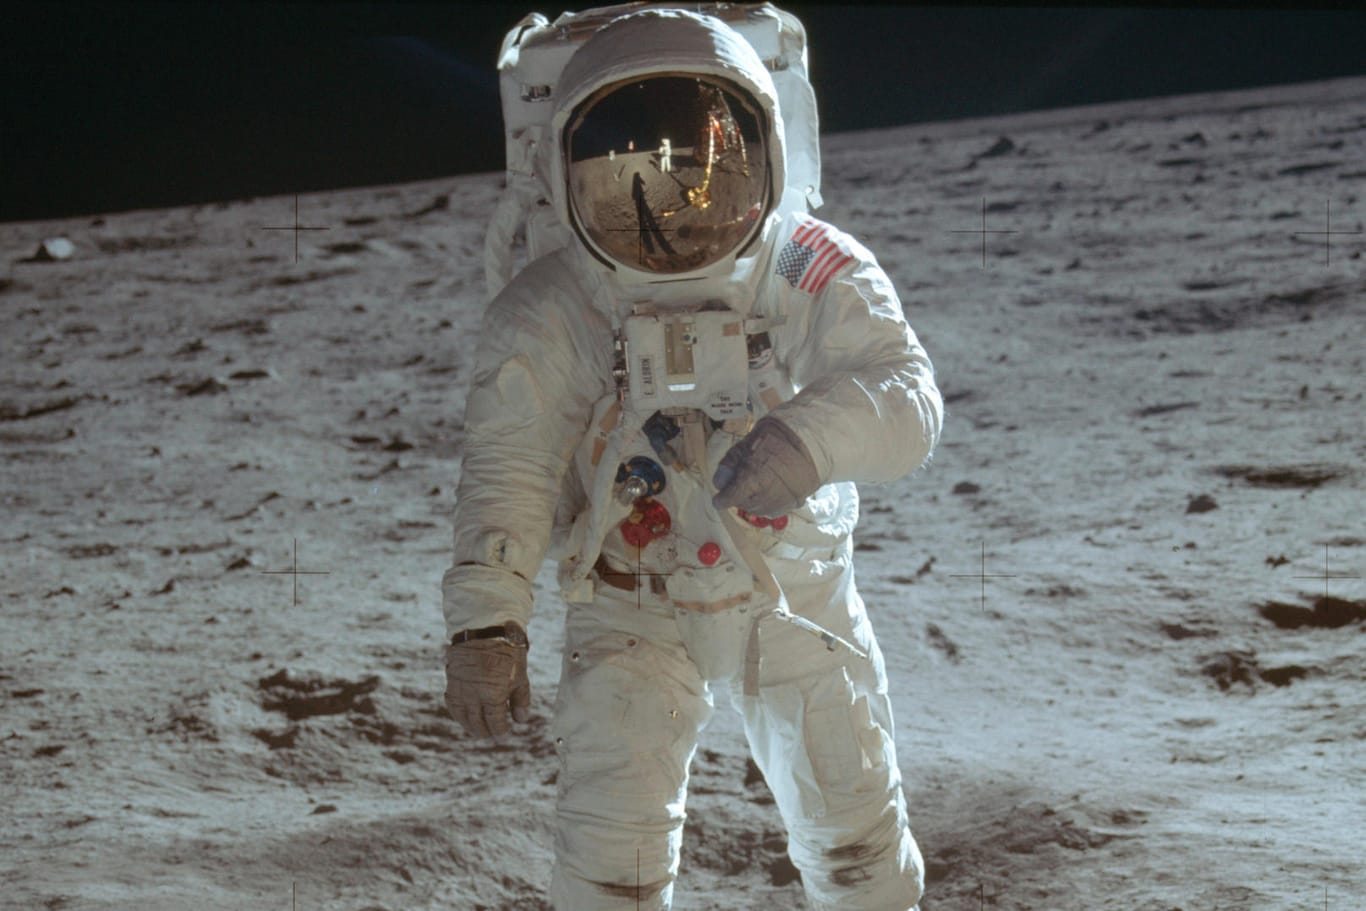 Buzz Aldrin 1969 auf dem Mond: Die USA wollen in absehbarer Zeit wieder Menschen auf den Mond bringen.